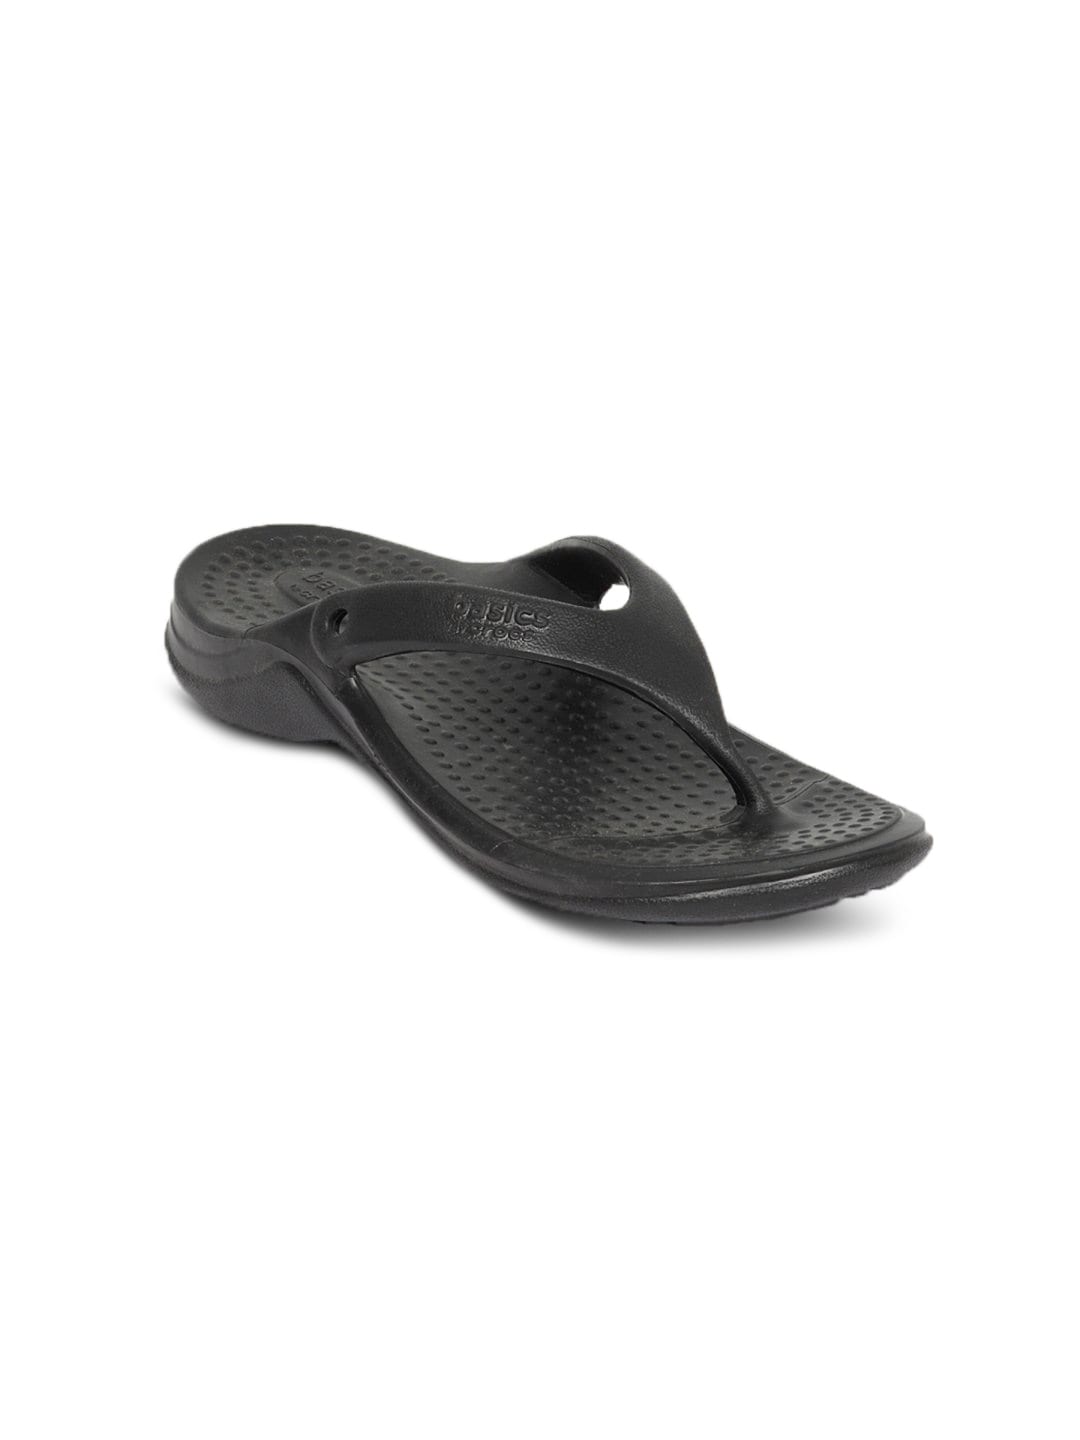 Crocs Unisex Basic Black Flip Flop